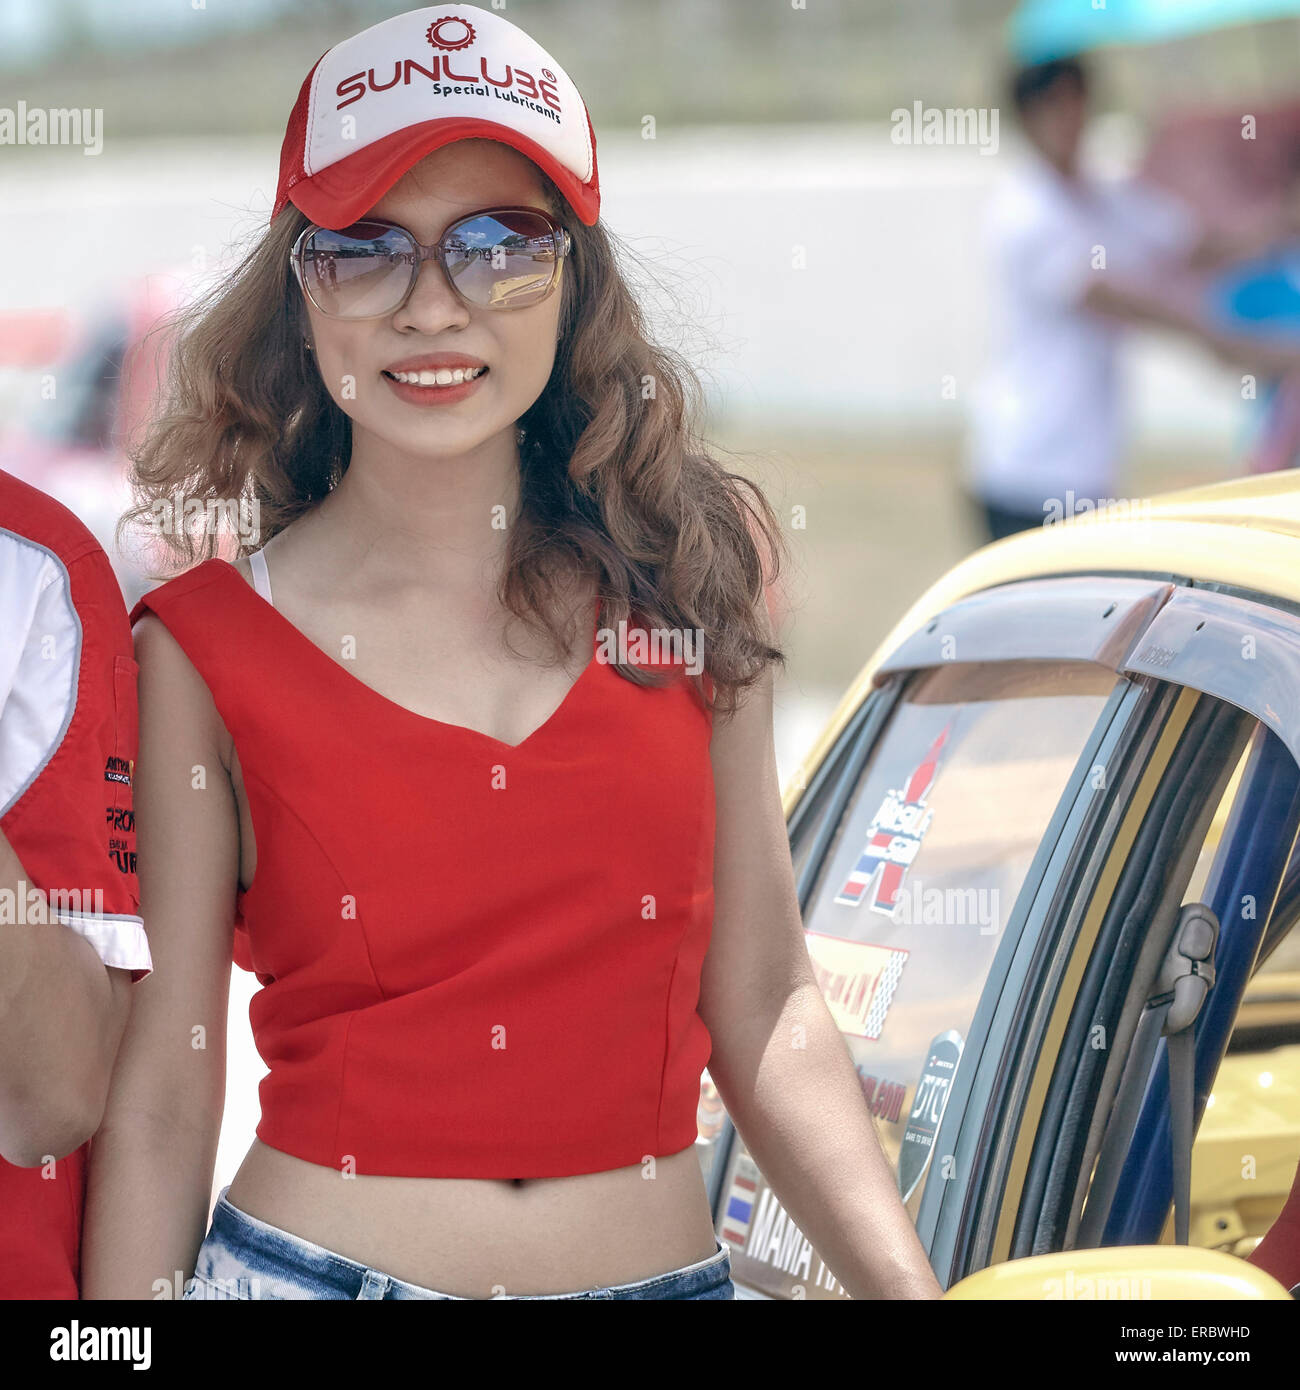 Femme asiatique, attrayante et souriante, jouant le rôle d'hôtesse sur piste lors d'un événement Motorsport. Banque D'Images